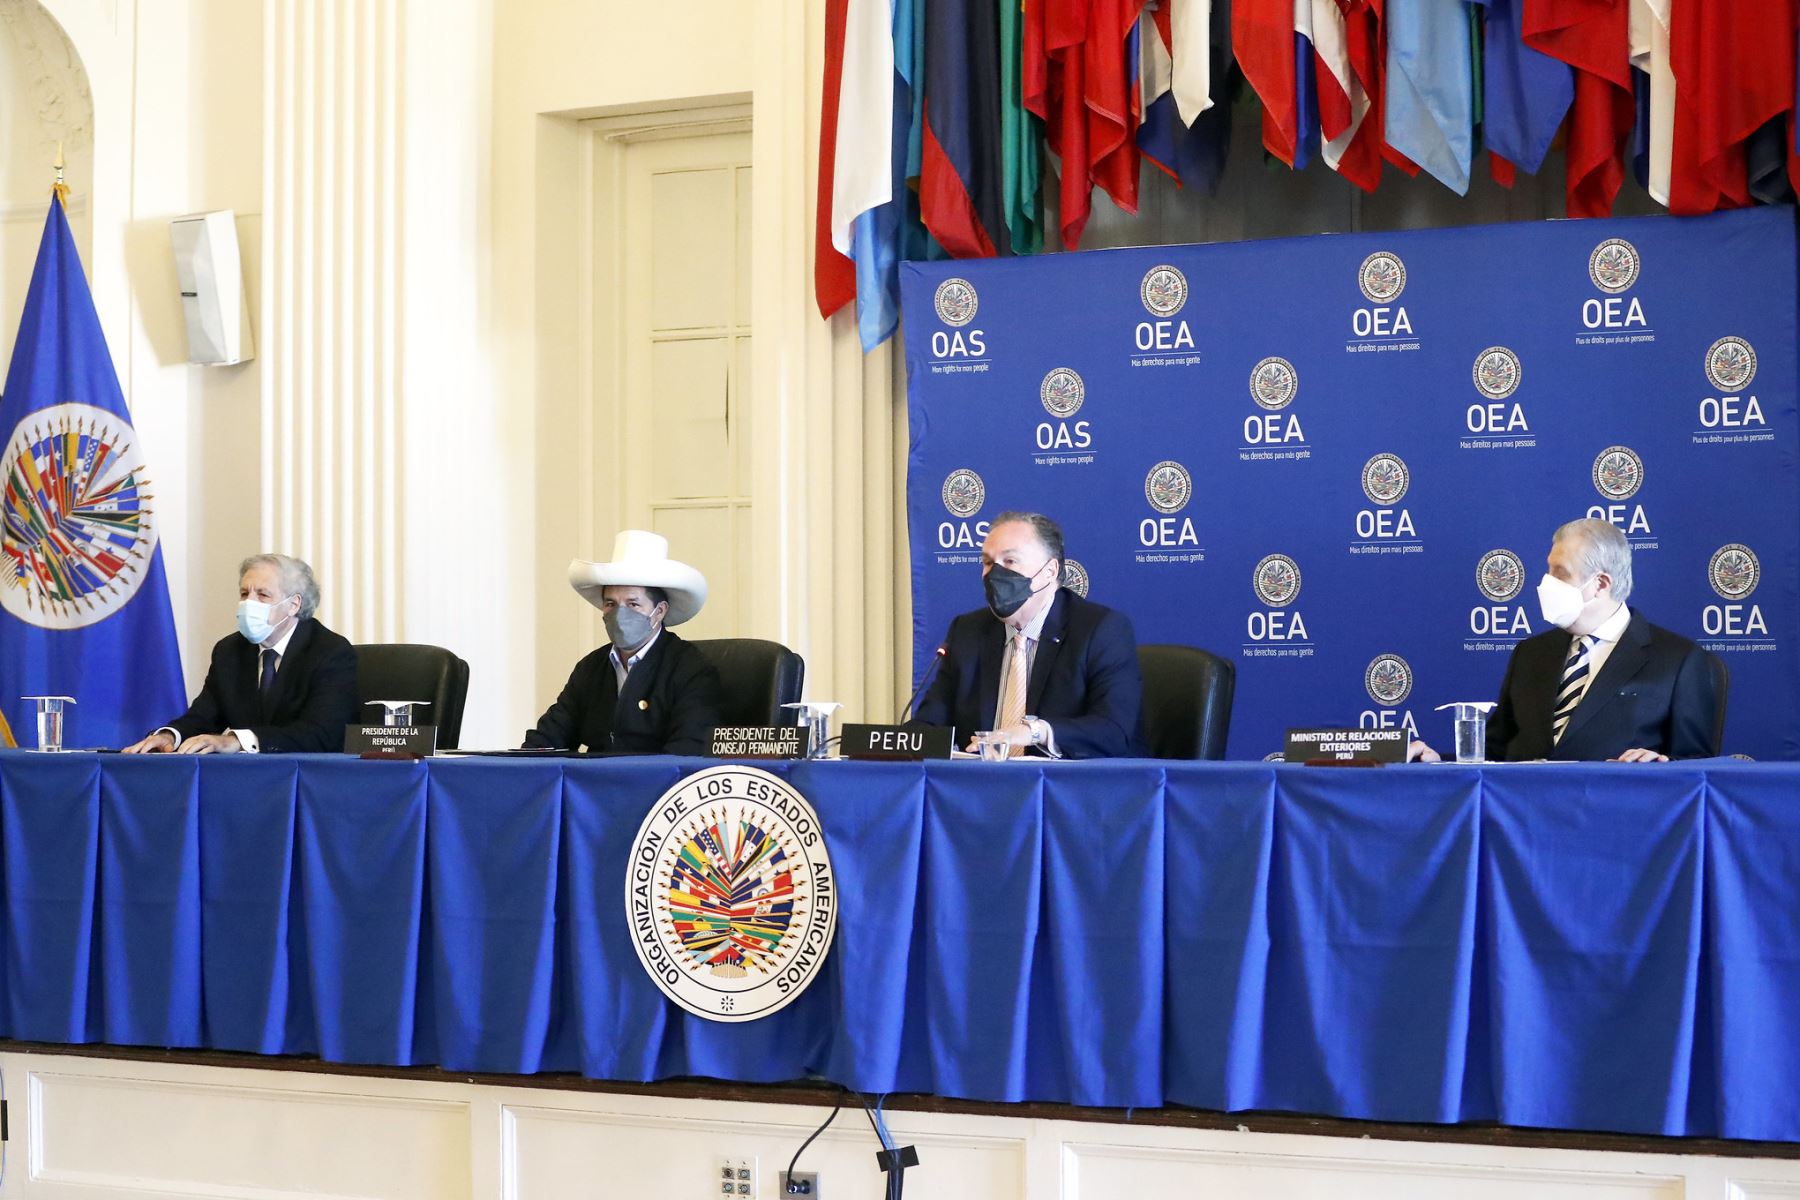 Jefe de Estado, Pedro Castillo, participó de la Sesión del Consejo Permanente de la Organización de Estados Americanos (OEA), en Washigton D.C. Foto: ANDINA/Prensa Presidencia